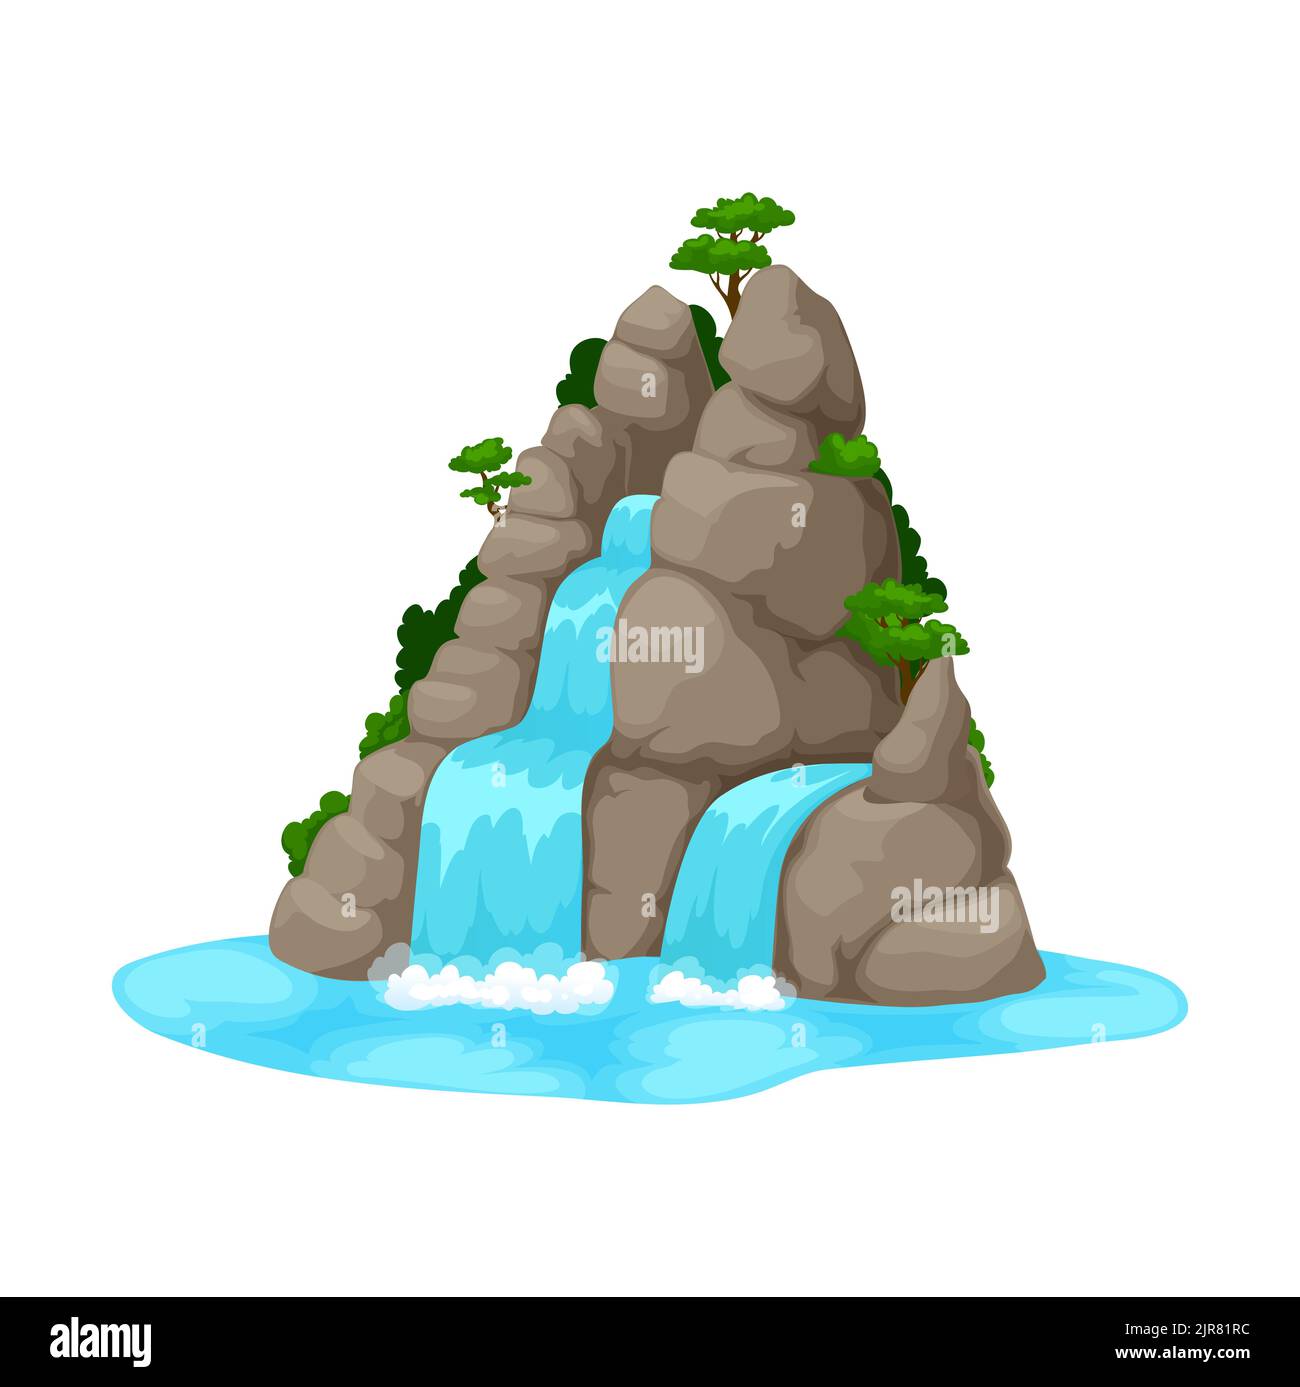 Cartoon Wasserfall oder Wasserfallfall von Bergfelsen mit grünen Bäumen. Vektor Natur Landschaft von grauen Steinklippe mit fließenden Flussbächen, blaue Wasserkaskaden von Wasserfall mit Spritzern Stock Vektor